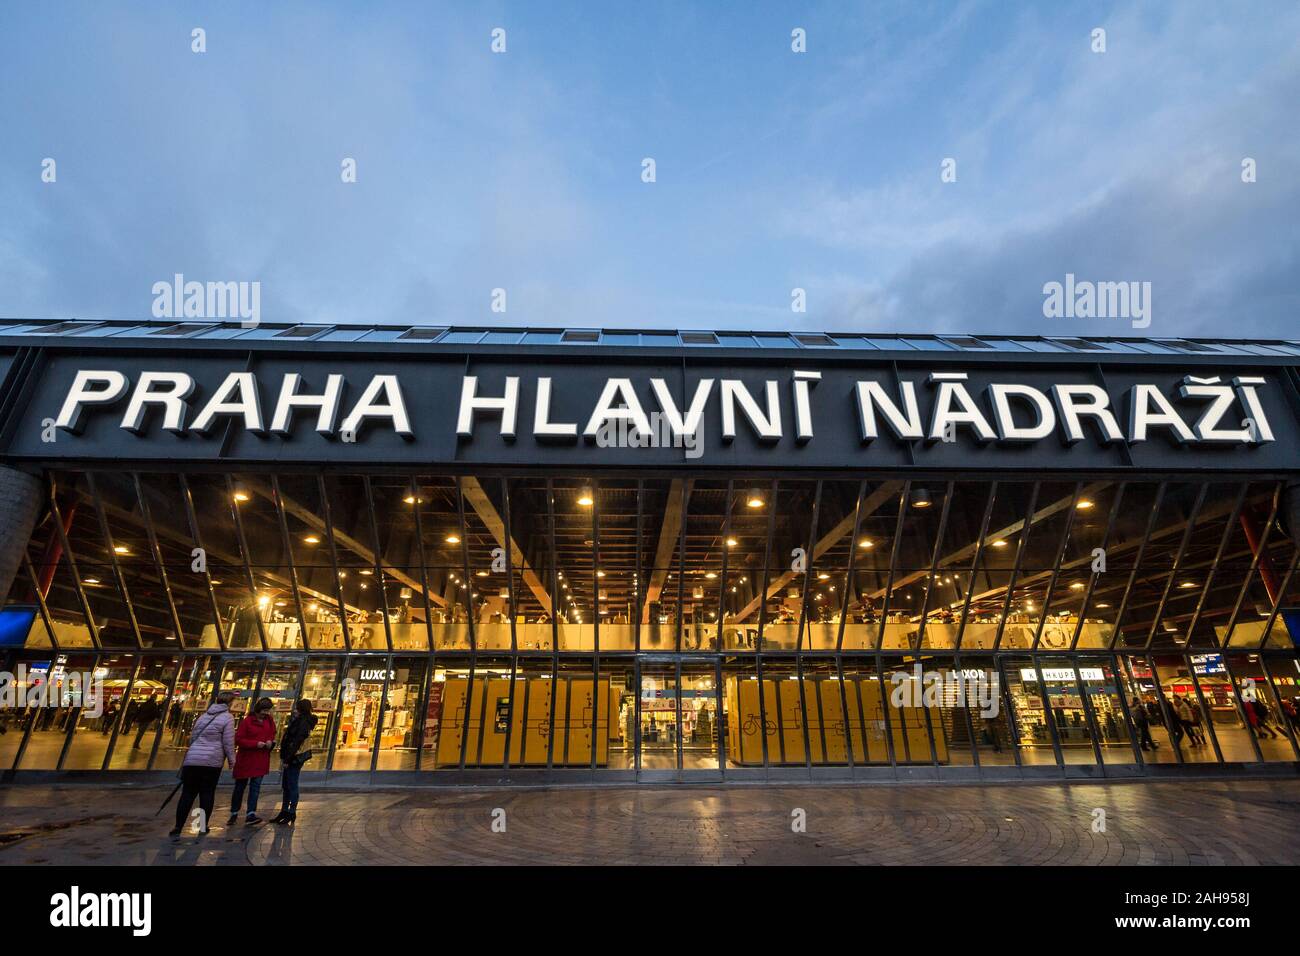 PRAGUE, Repubblica Ceca - 2 Novembre 2019: persone in piedi davanti all'ingresso di Praga Hlavni Nadrazi stazione ferroviaria principale, con il suo segno iconico. È t Foto Stock